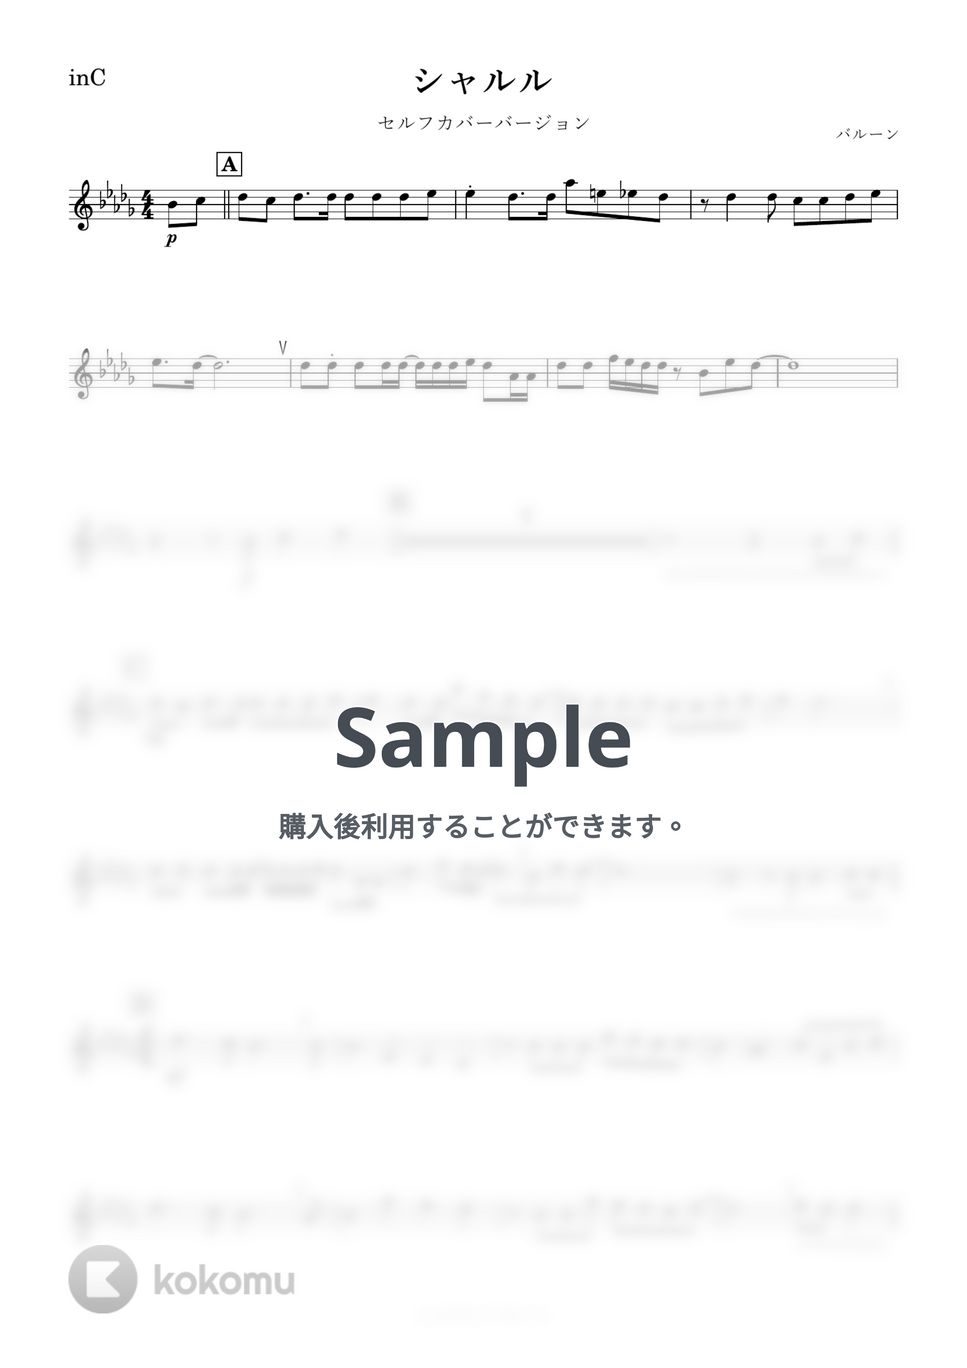 バルーン - シャルル (C) by kanamusic